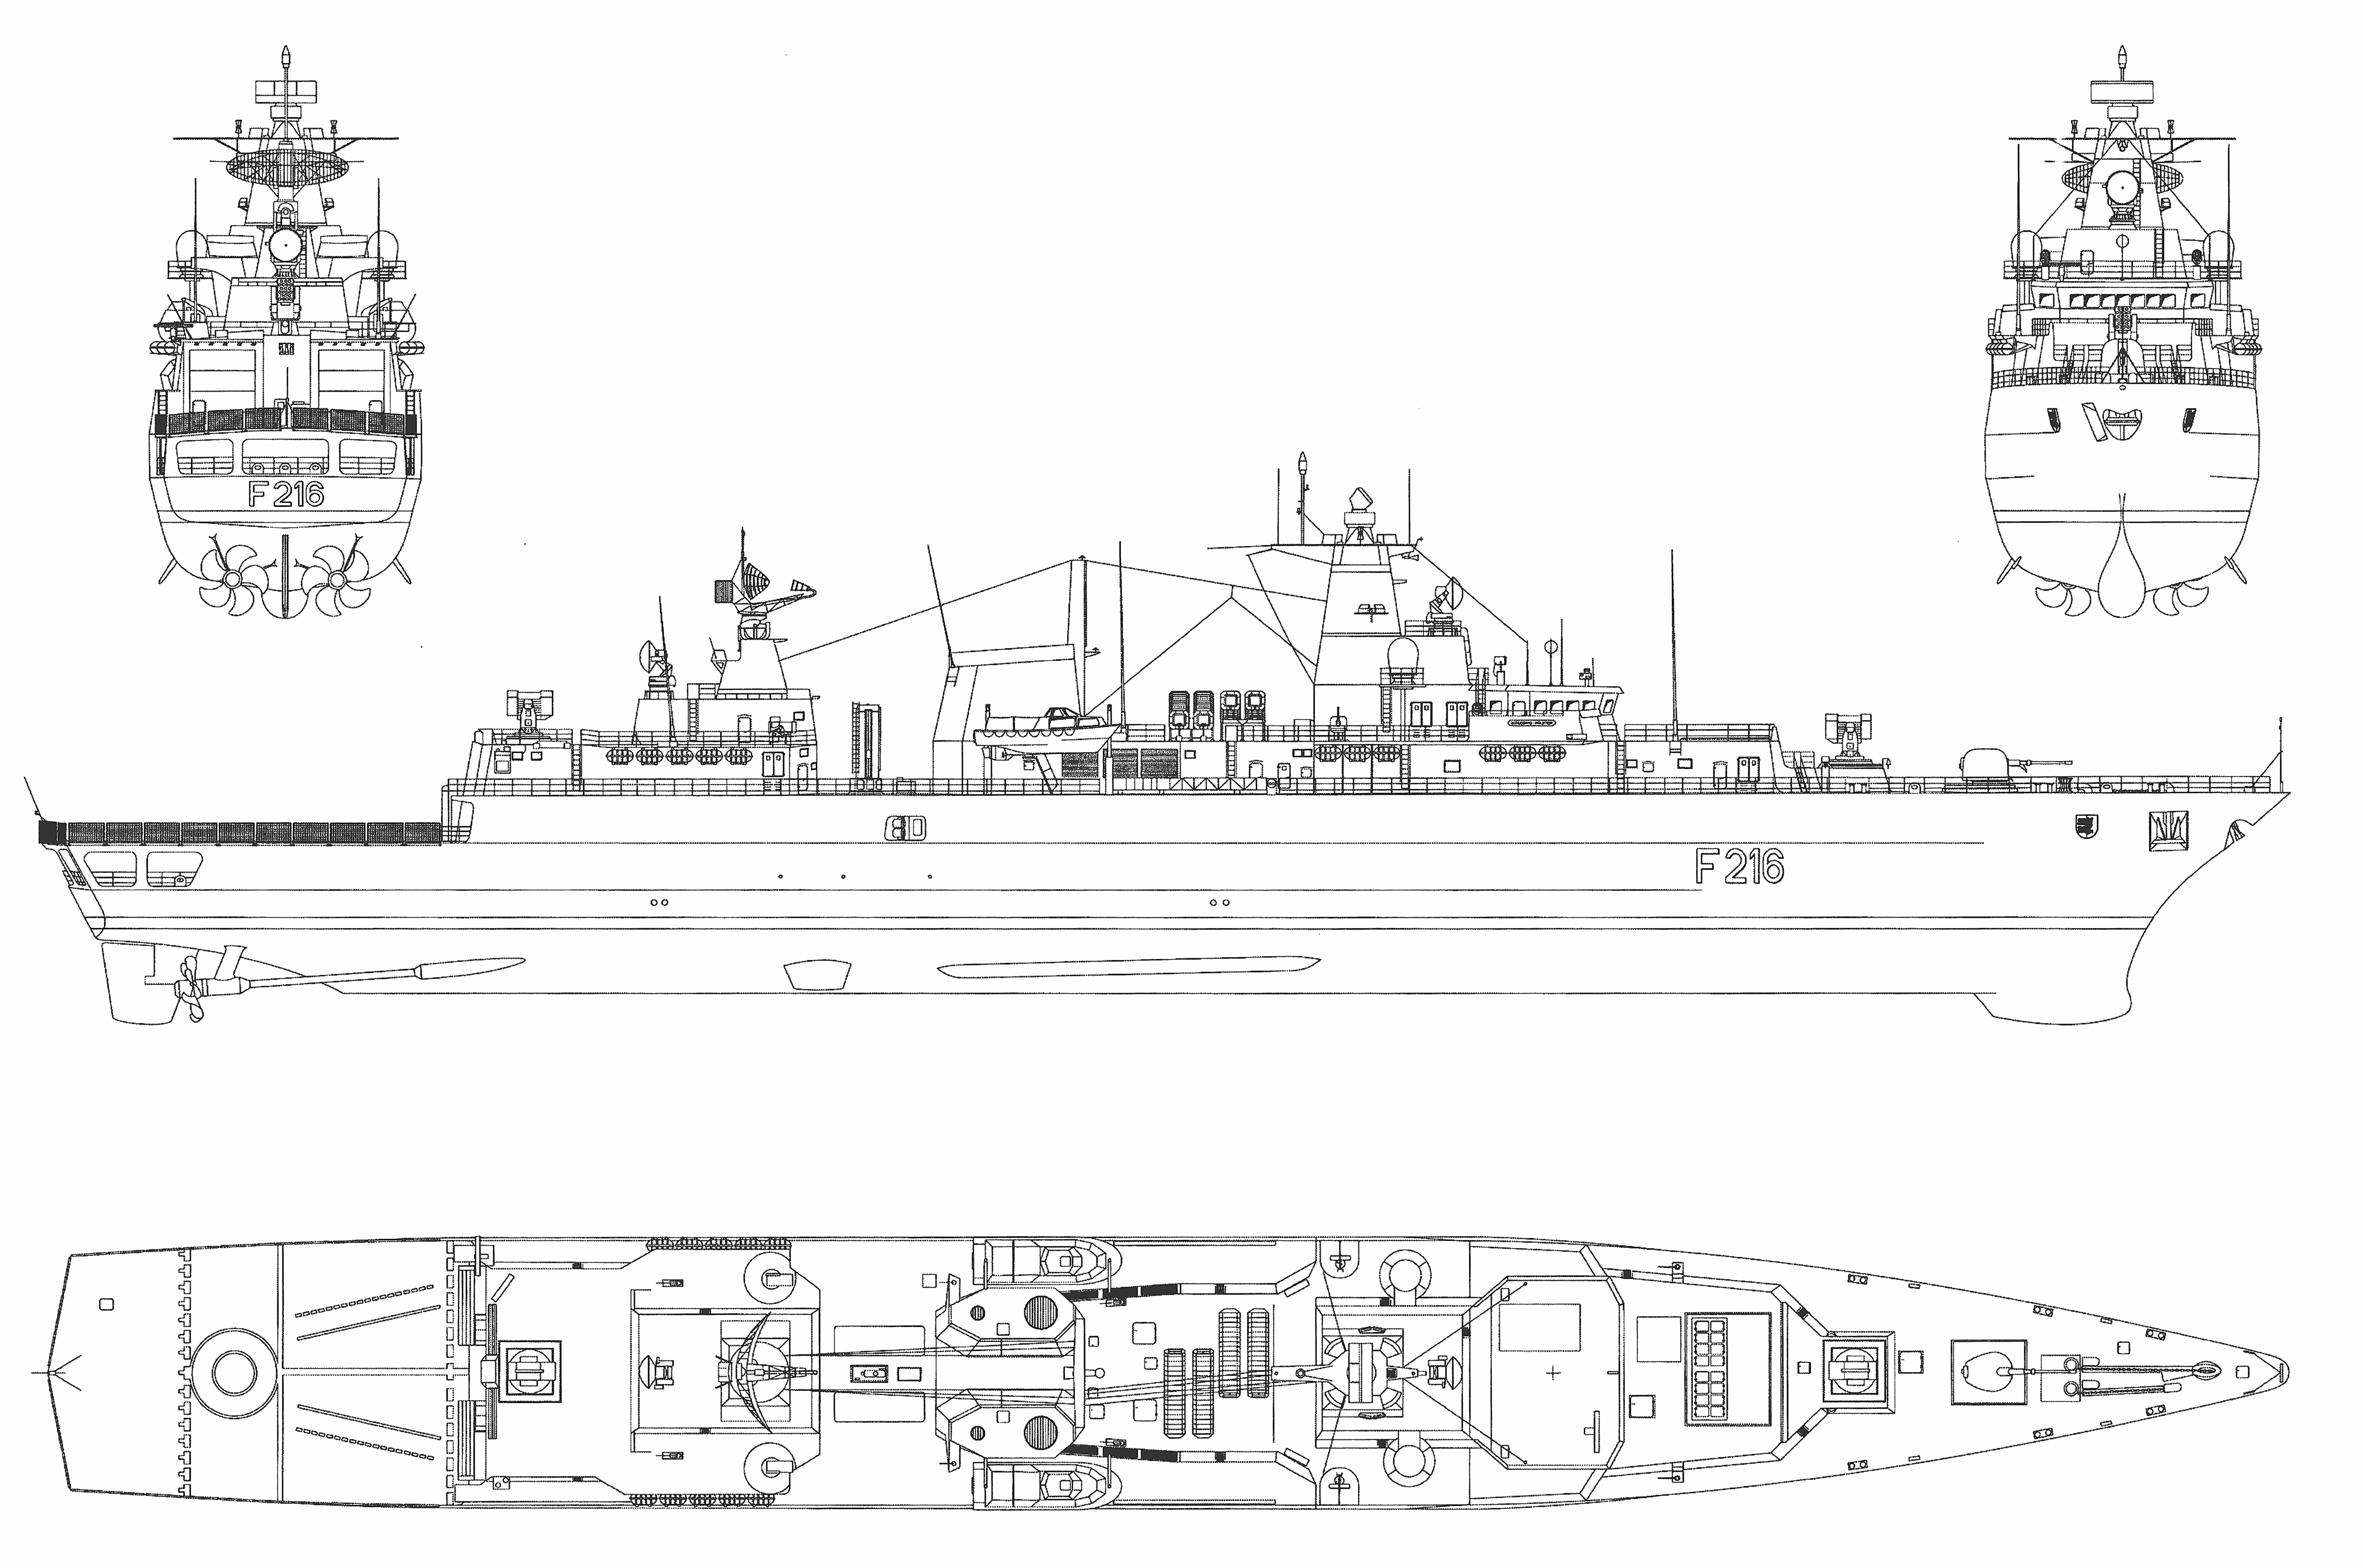 German frigate Schleswig-Holstein blueprint